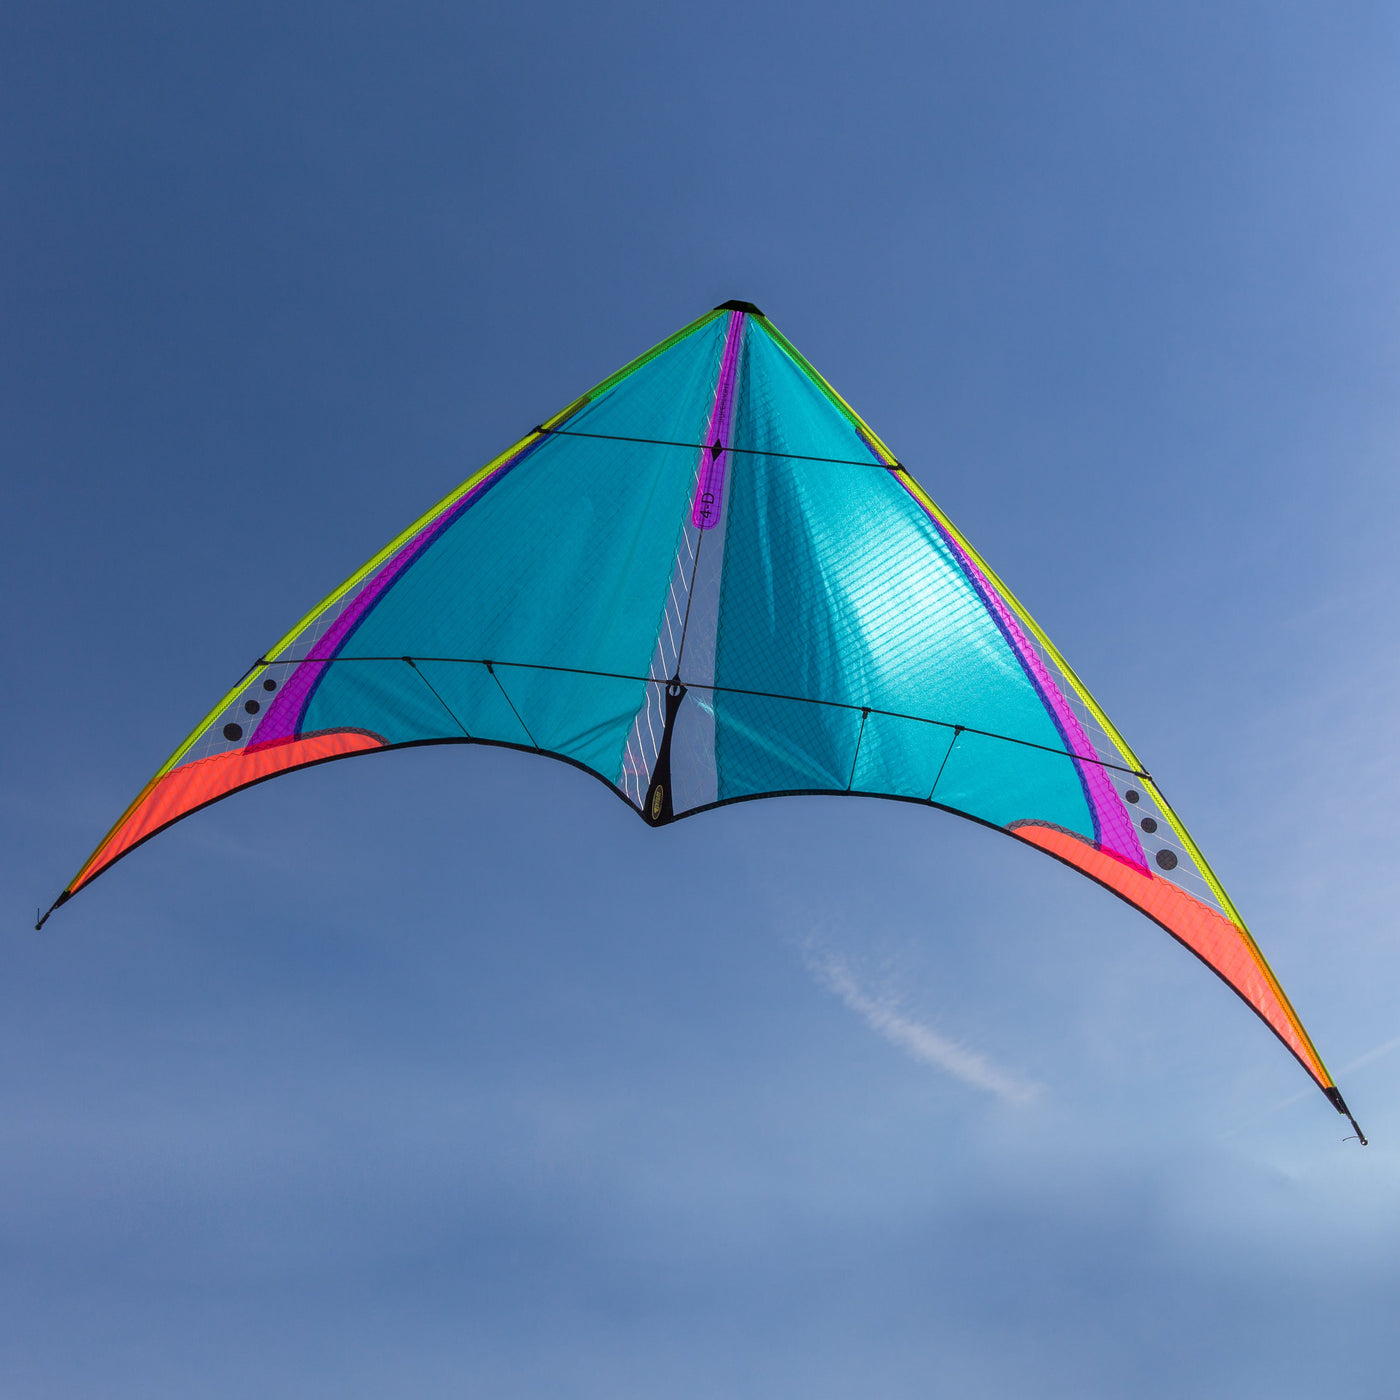 Throwback 4D Superlight stunt kite in sky